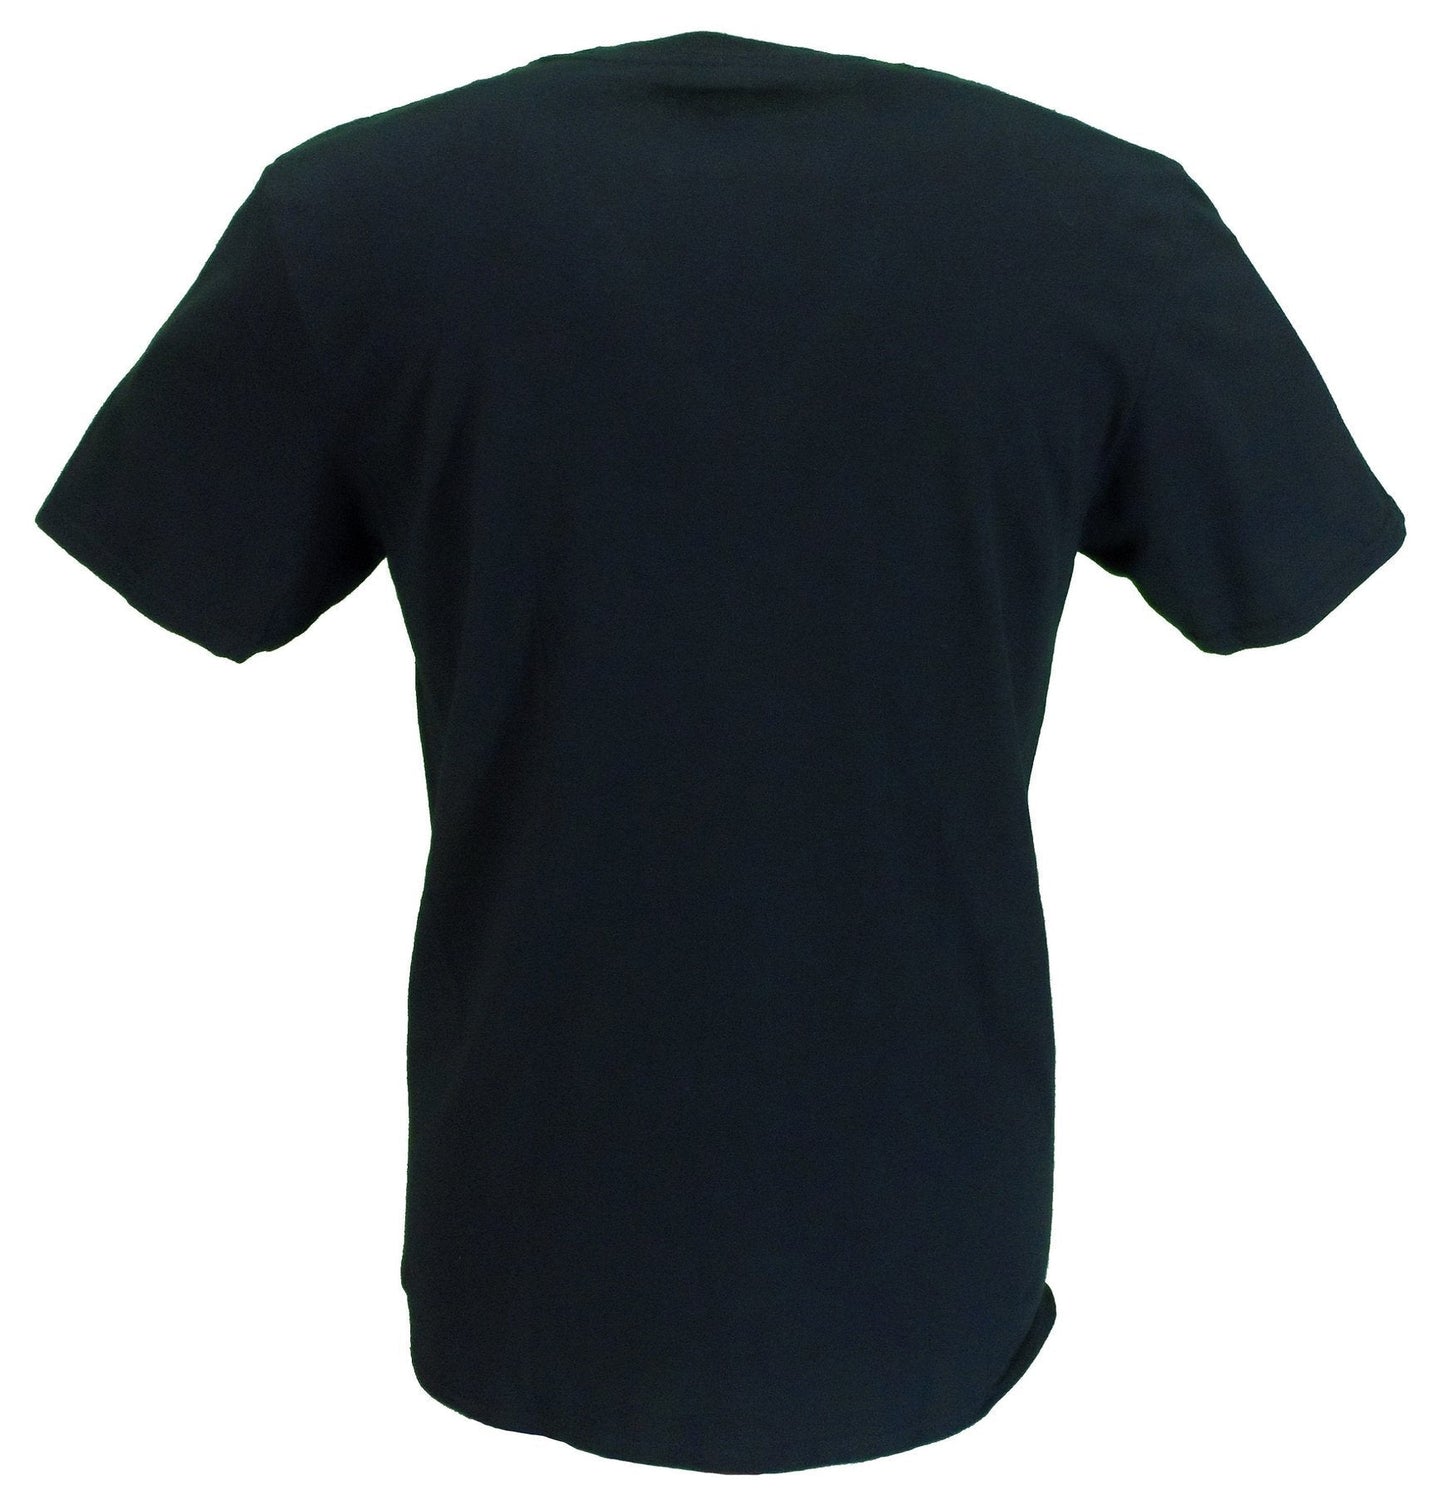 T-shirt noir officiel avec logo bloc des spéciaux pour hommes